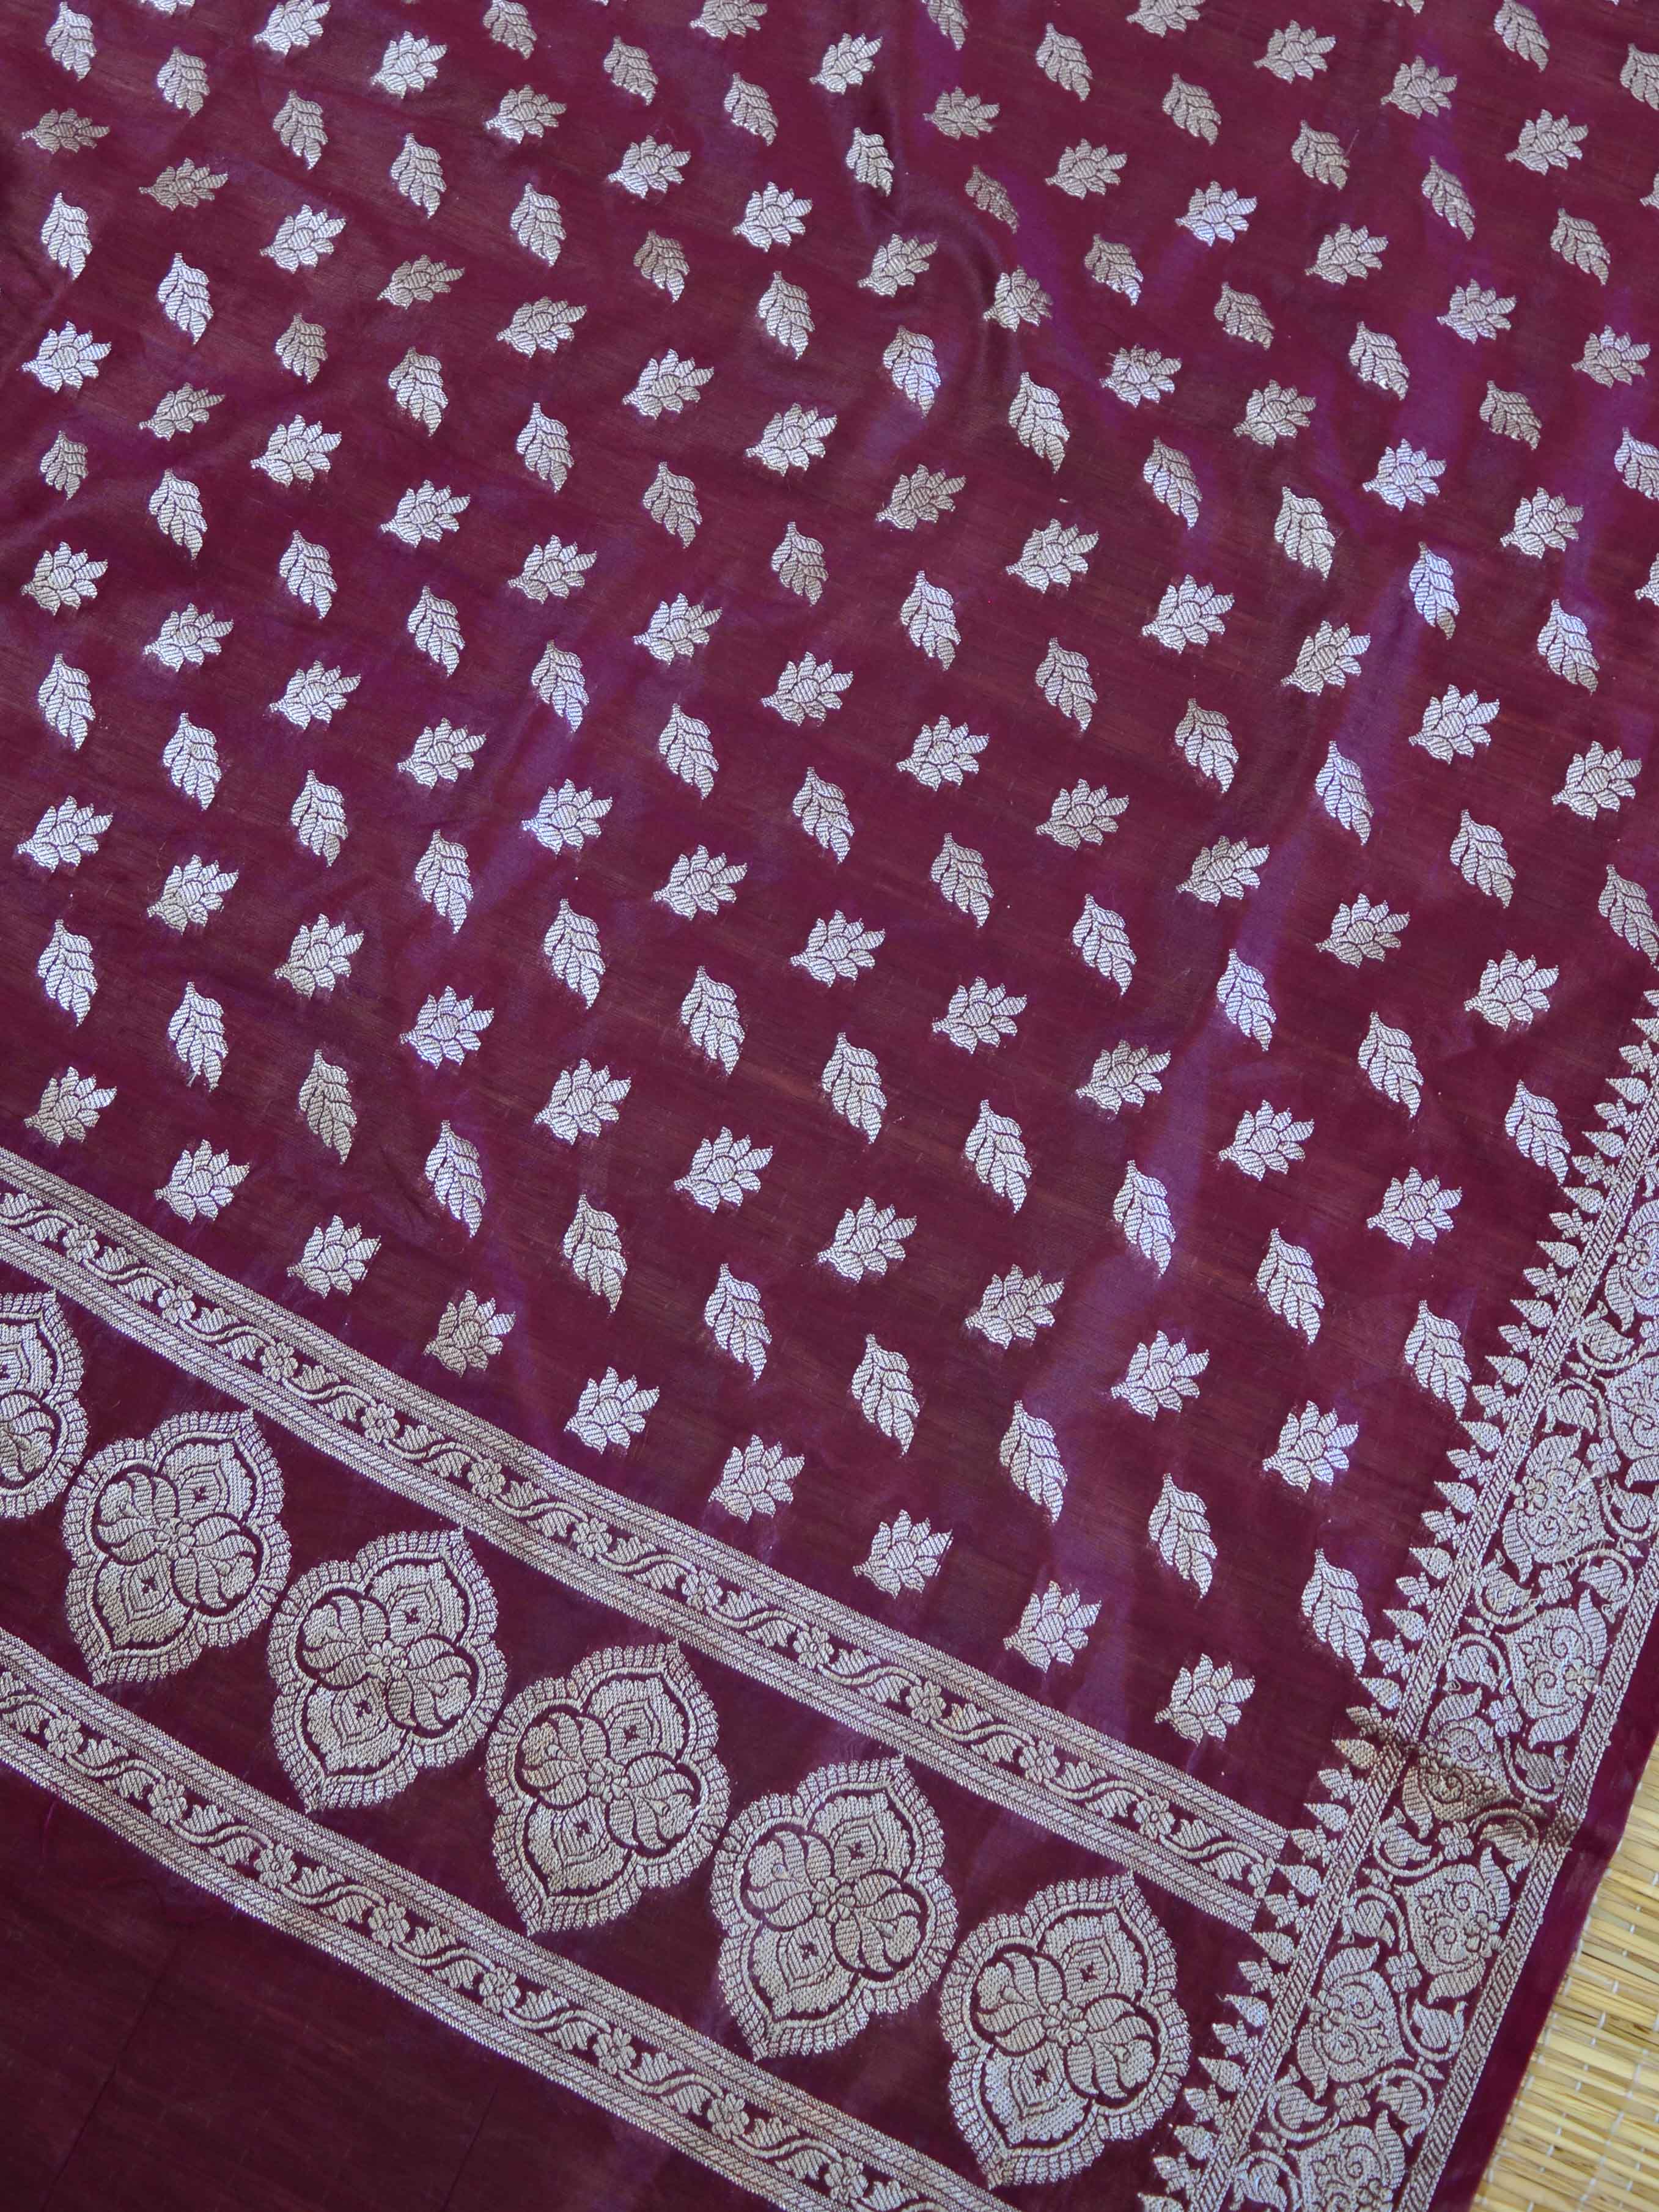 Banarasee Salwar Kameez Glossy Cotton Silk Silver Woven Buti Fabric-Orange & Wine